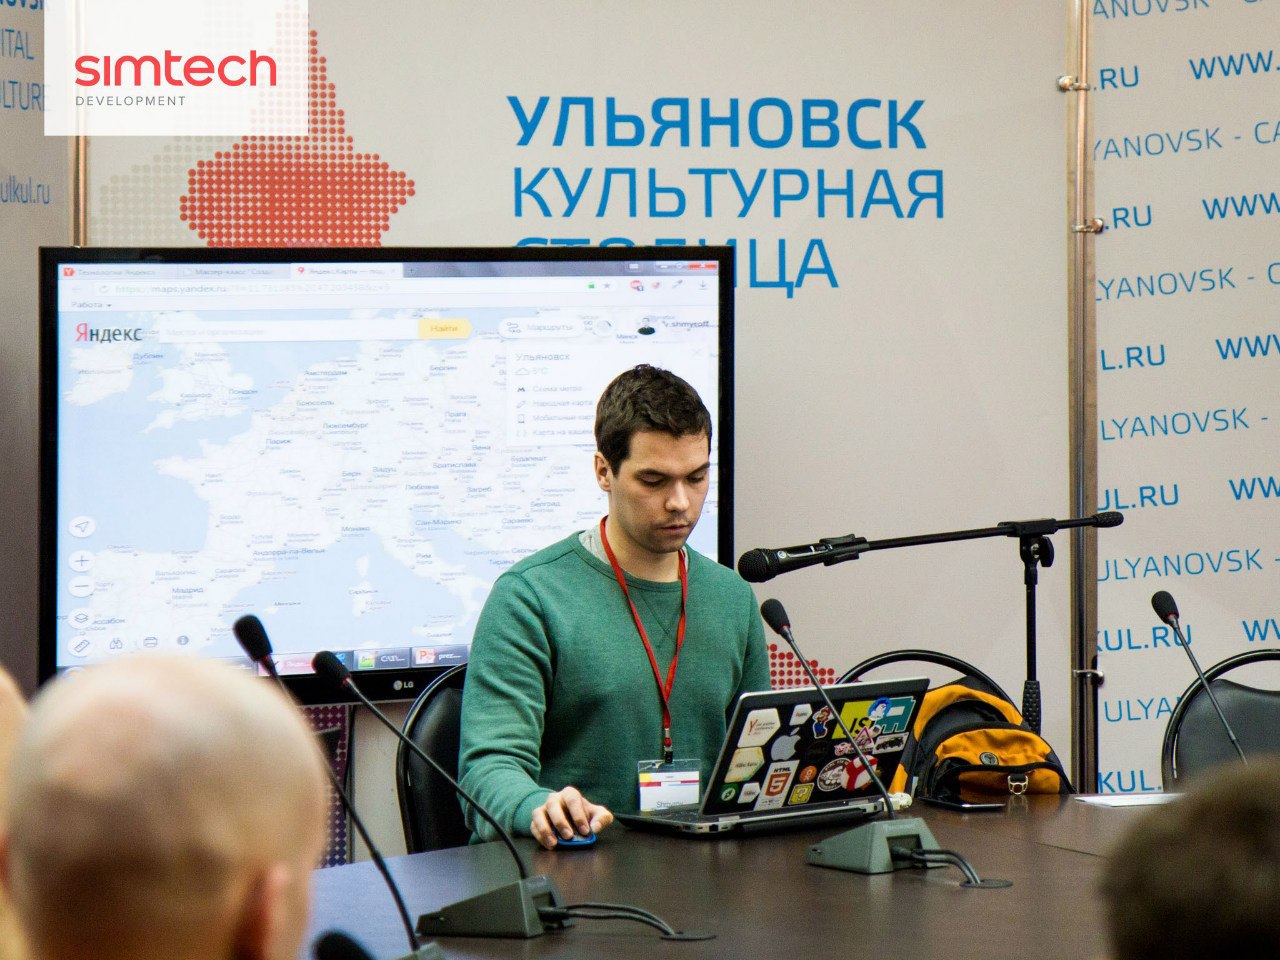 Стачка-2015: Ленин, stop working и высокие технологии. Большой обзор IV международной IT-конференции «Стачка» - 20